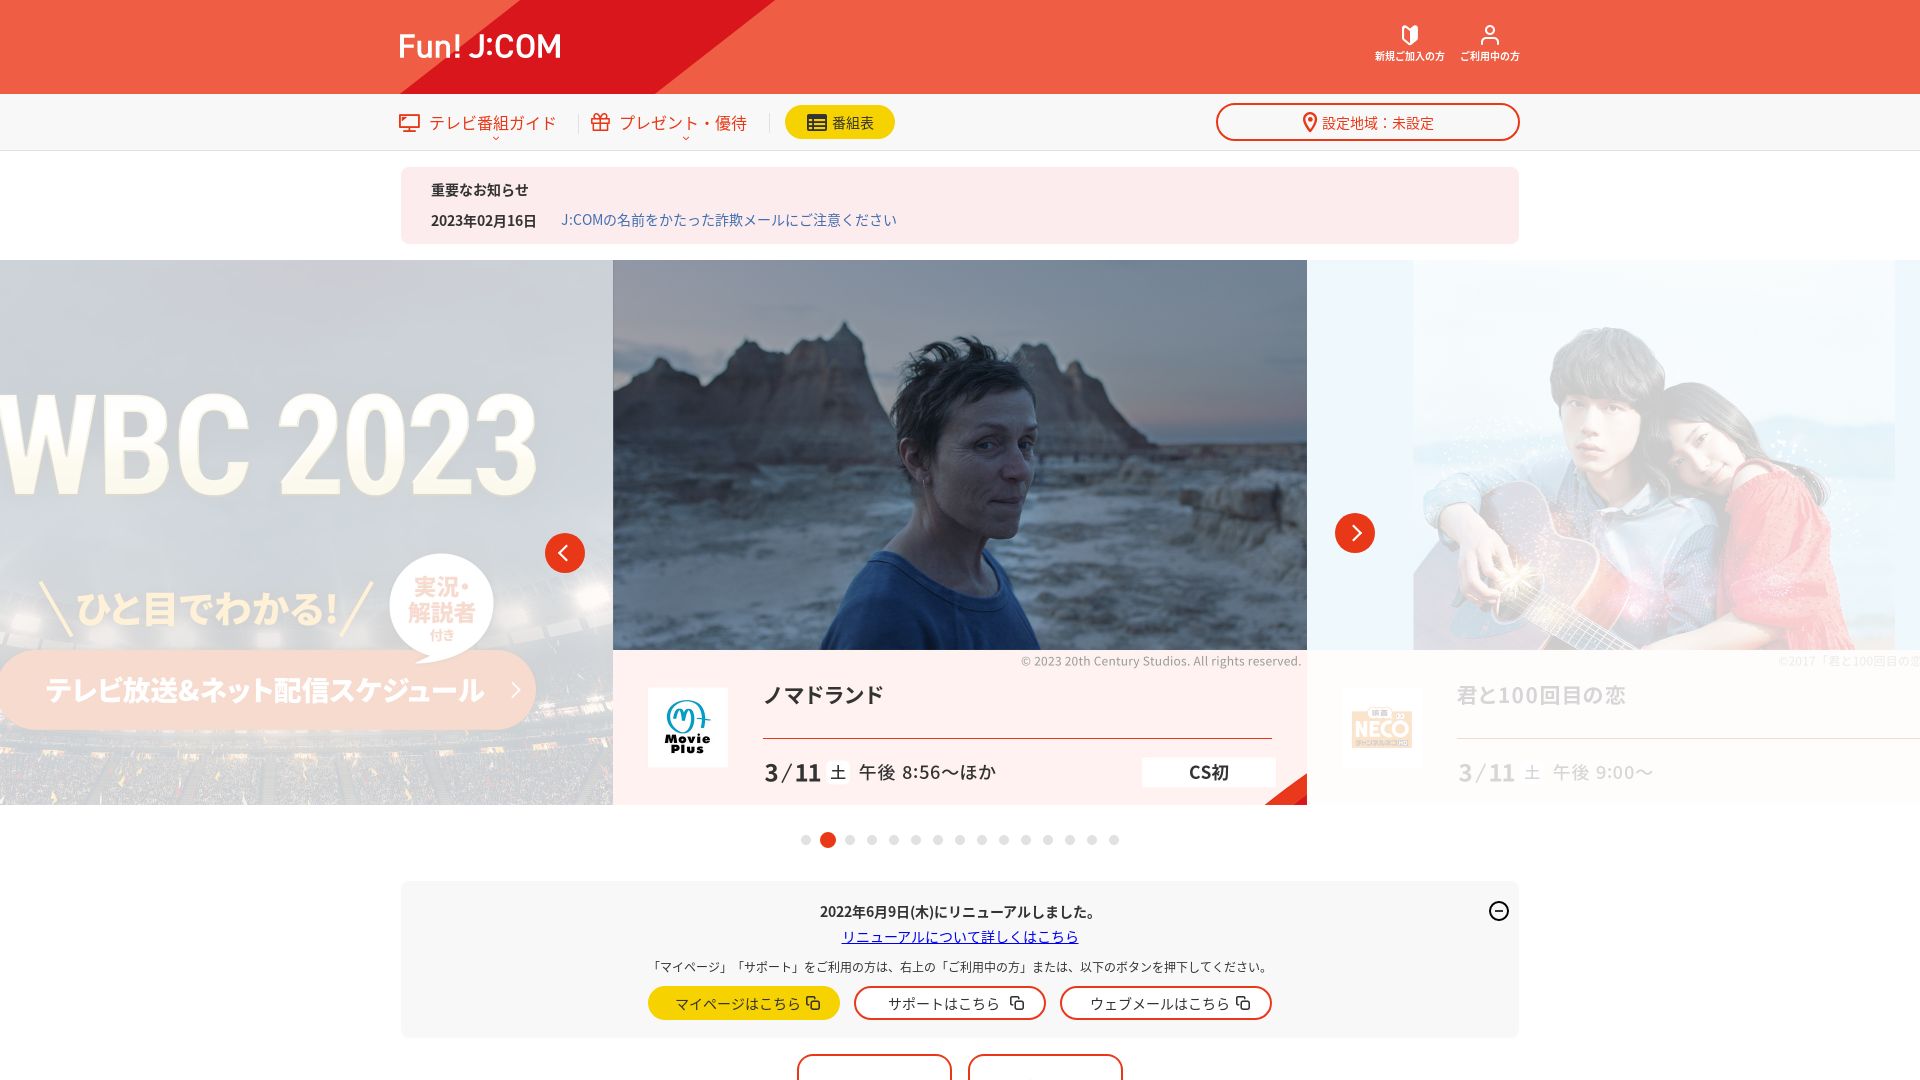 Estado web myjcom.jp está   ONLINE